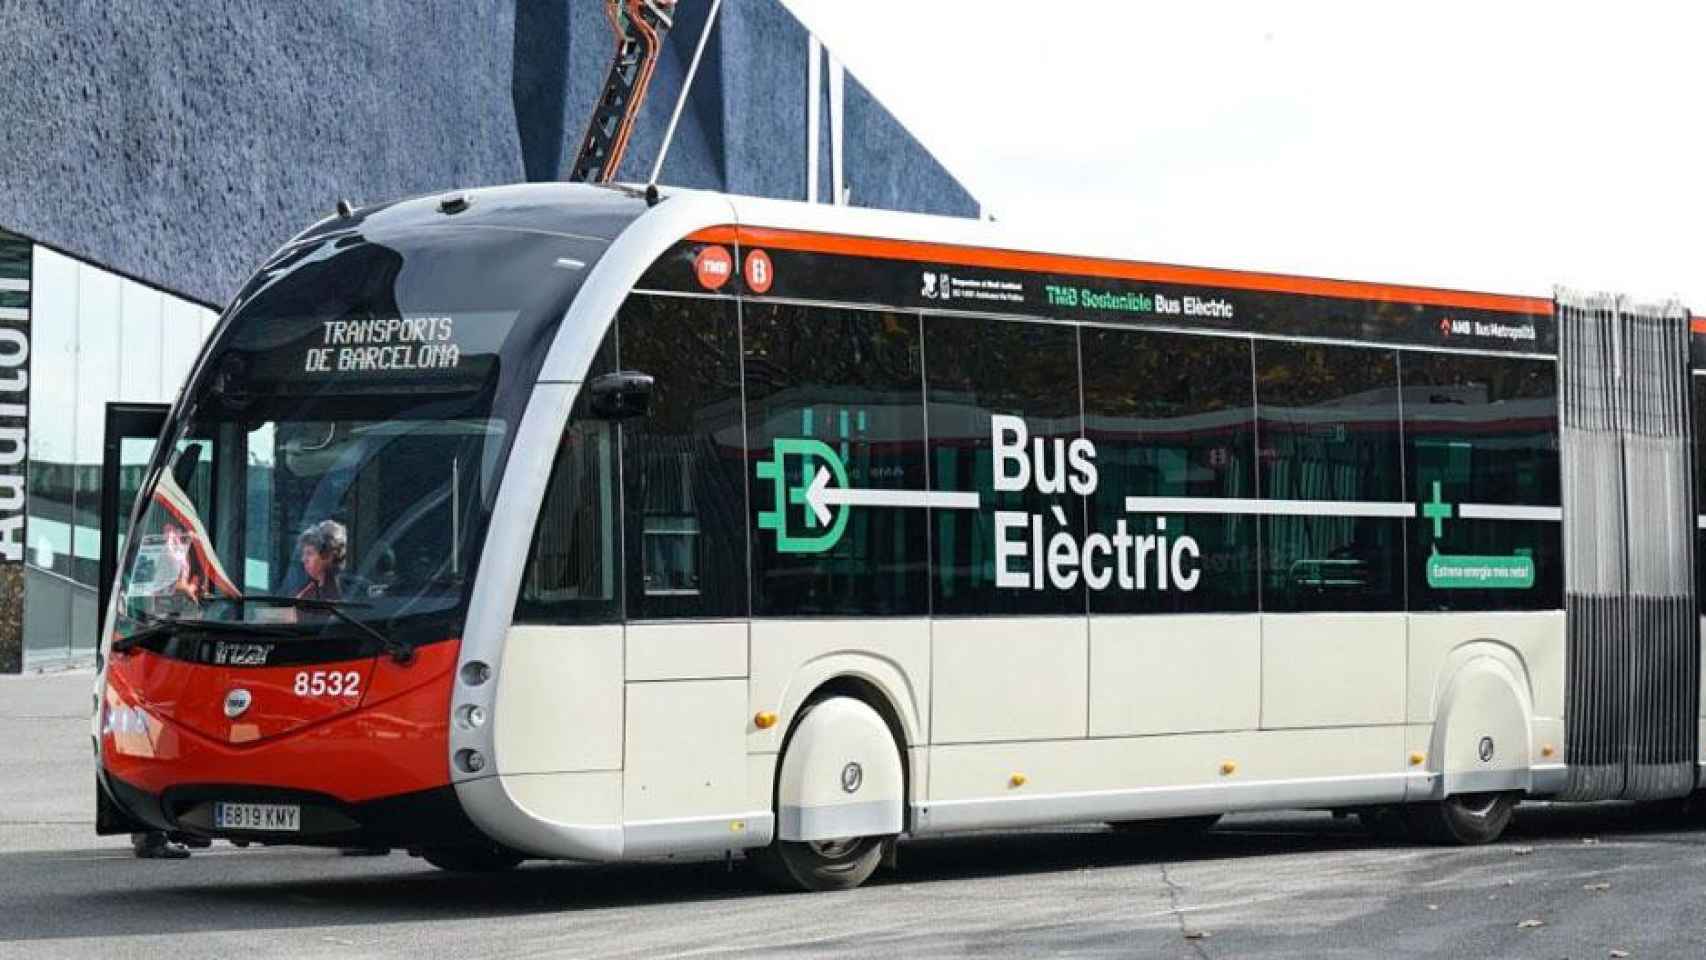 Uno de los últimos autobuses, en este caso eléctrico, que se han unido a la flota de Barcelona / MA